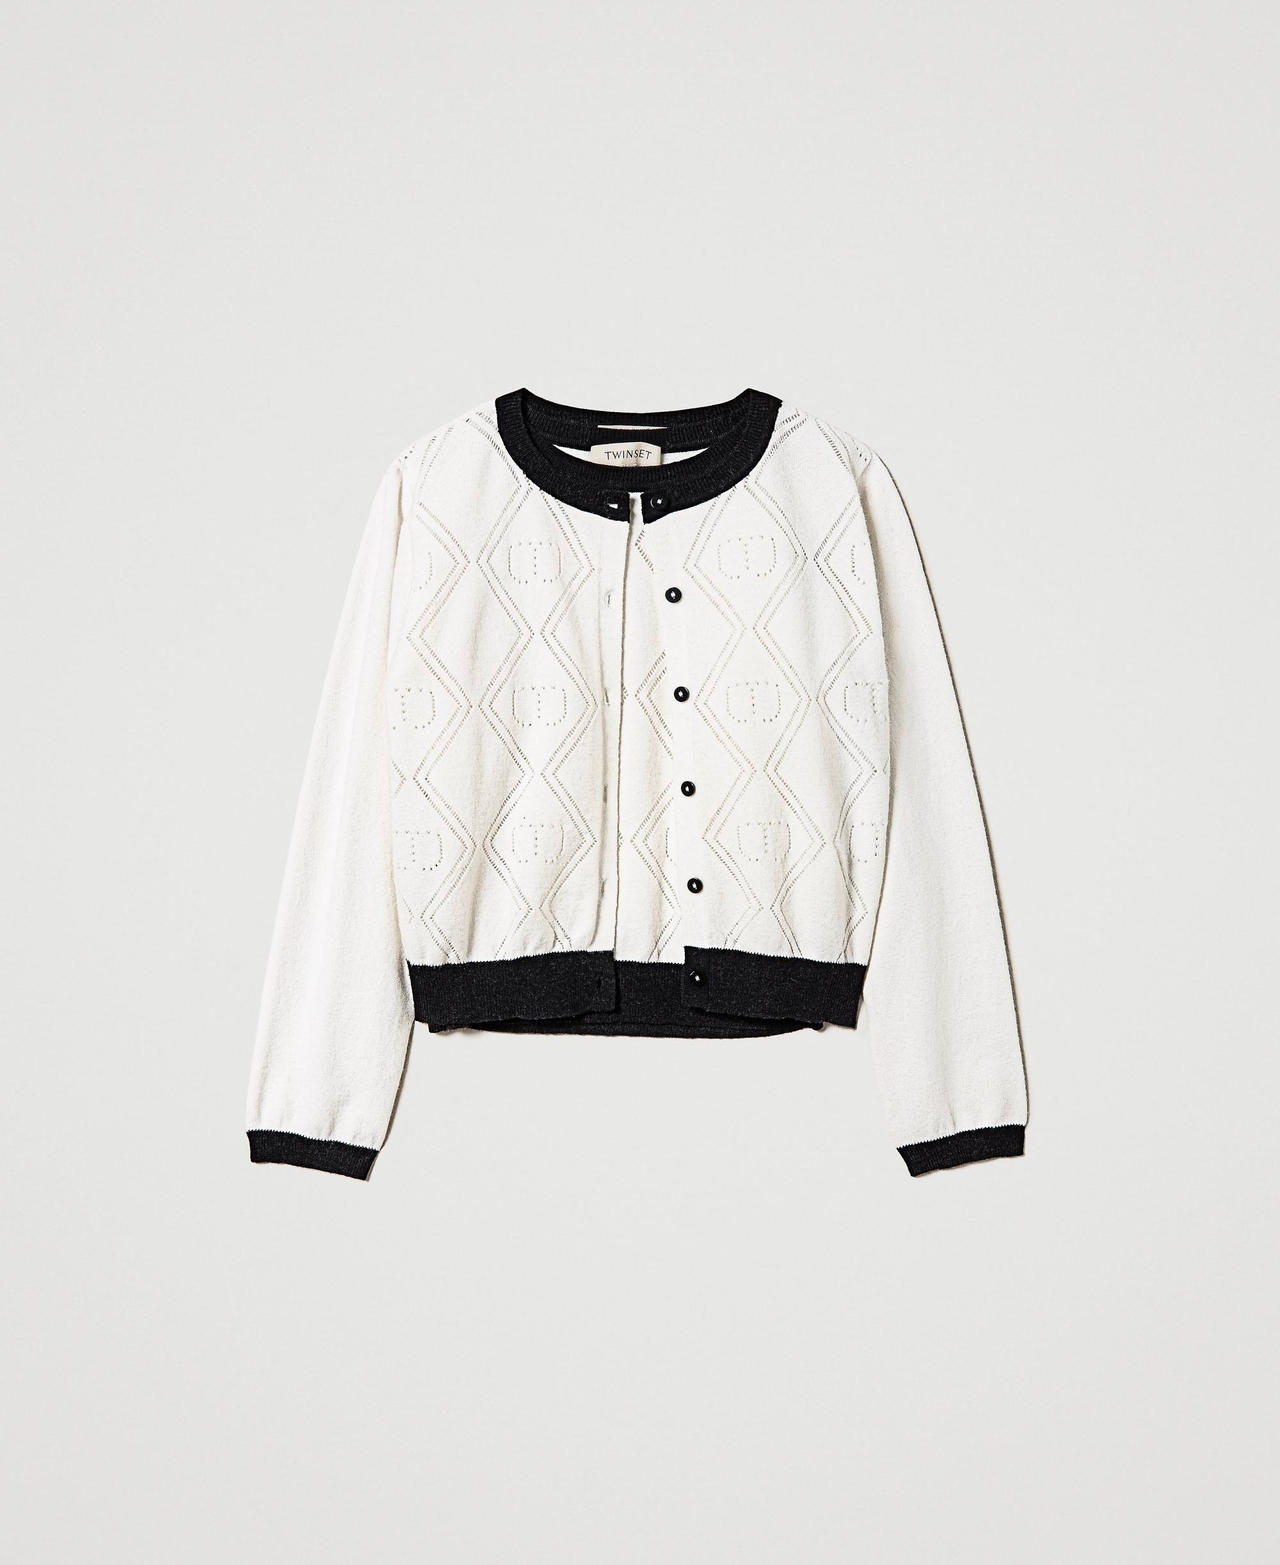 Cardigan et pull avec motif Oval T Bicolore Blanc Cassé / Noir Fille 232GJ3770-0S